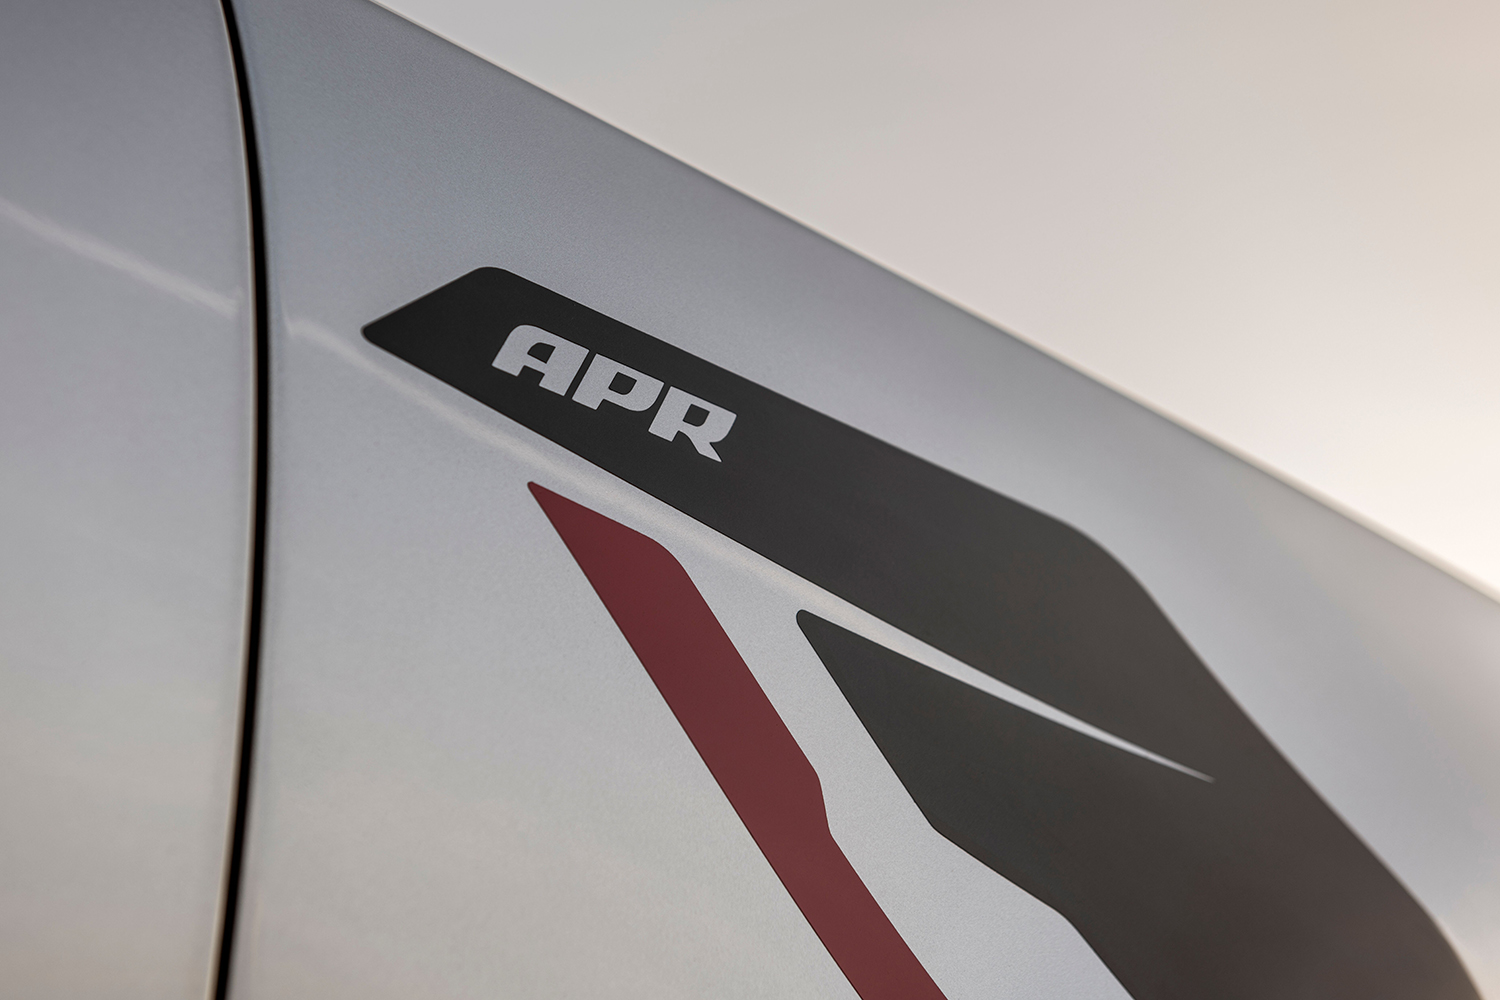 AddArmor Audi RS7